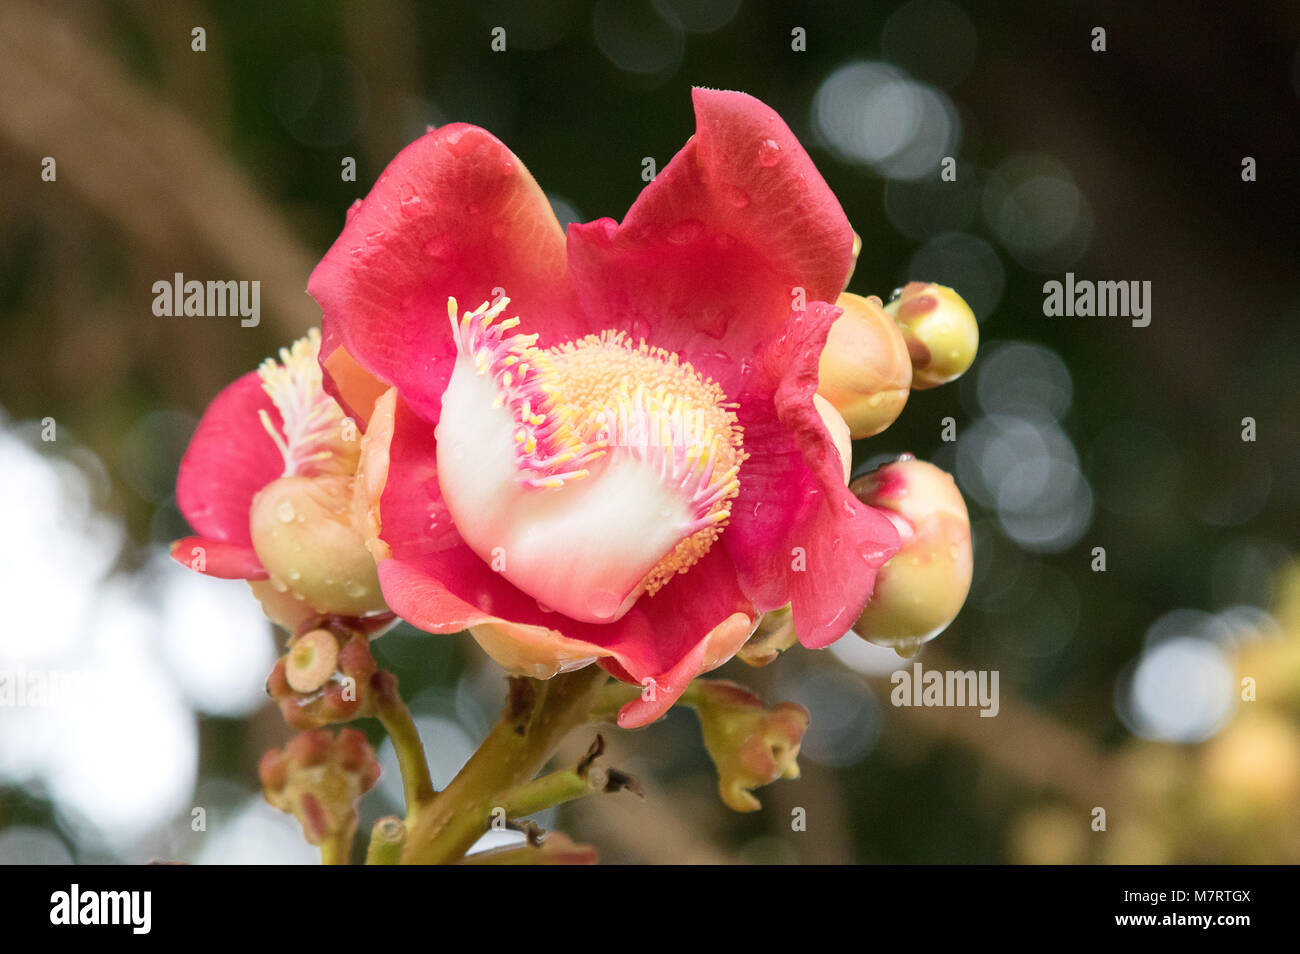 Die rote Blume von Pentacme Siamensis, oder Shorea Siamensis, auch bekannt als Red Meranti oder Red lauan, Kambodscha, Asien Stockfoto